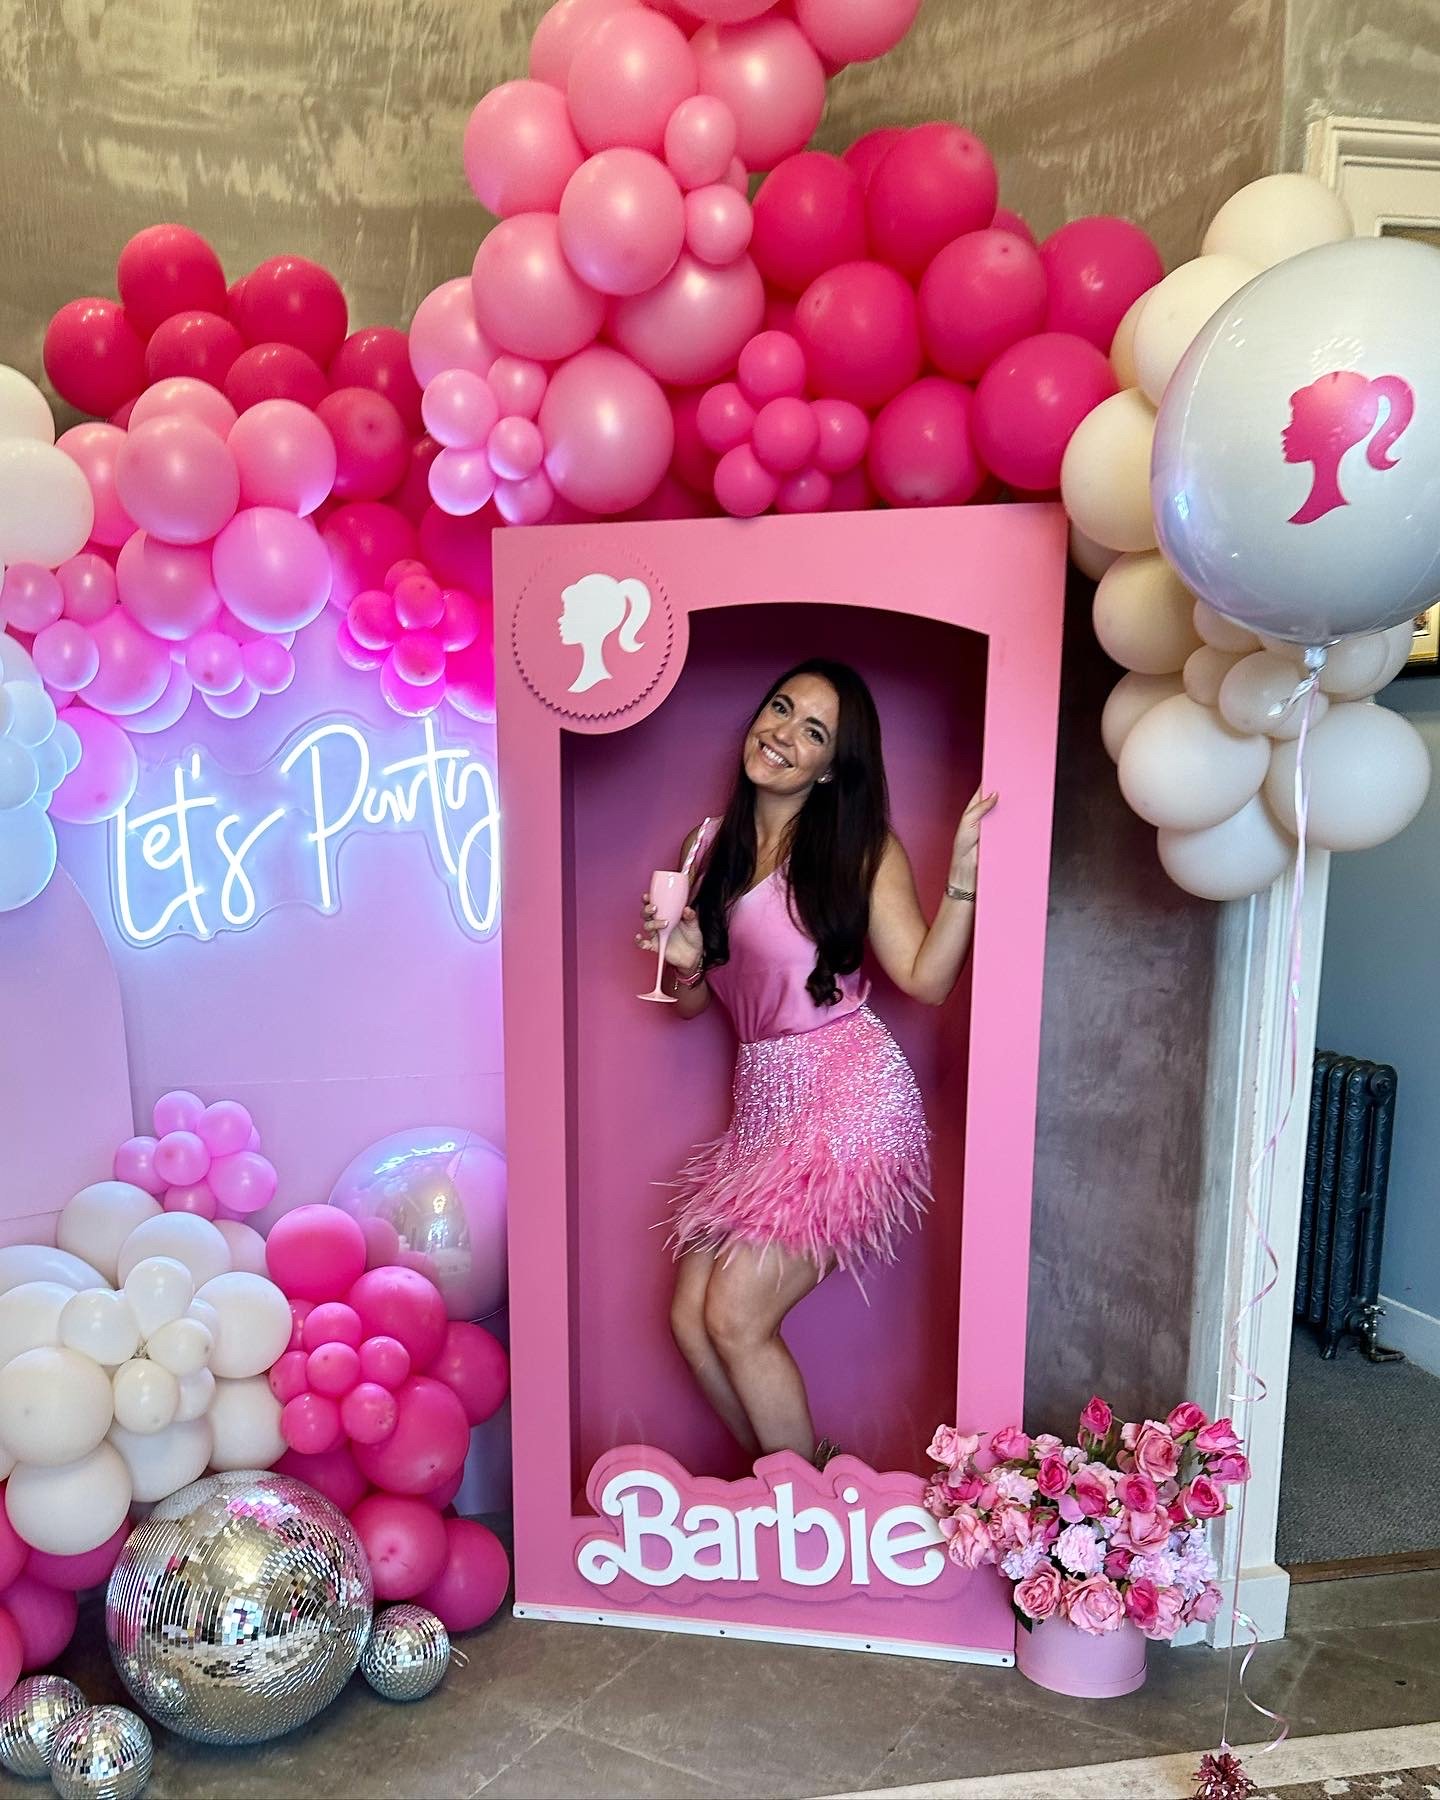 Barbie party decor